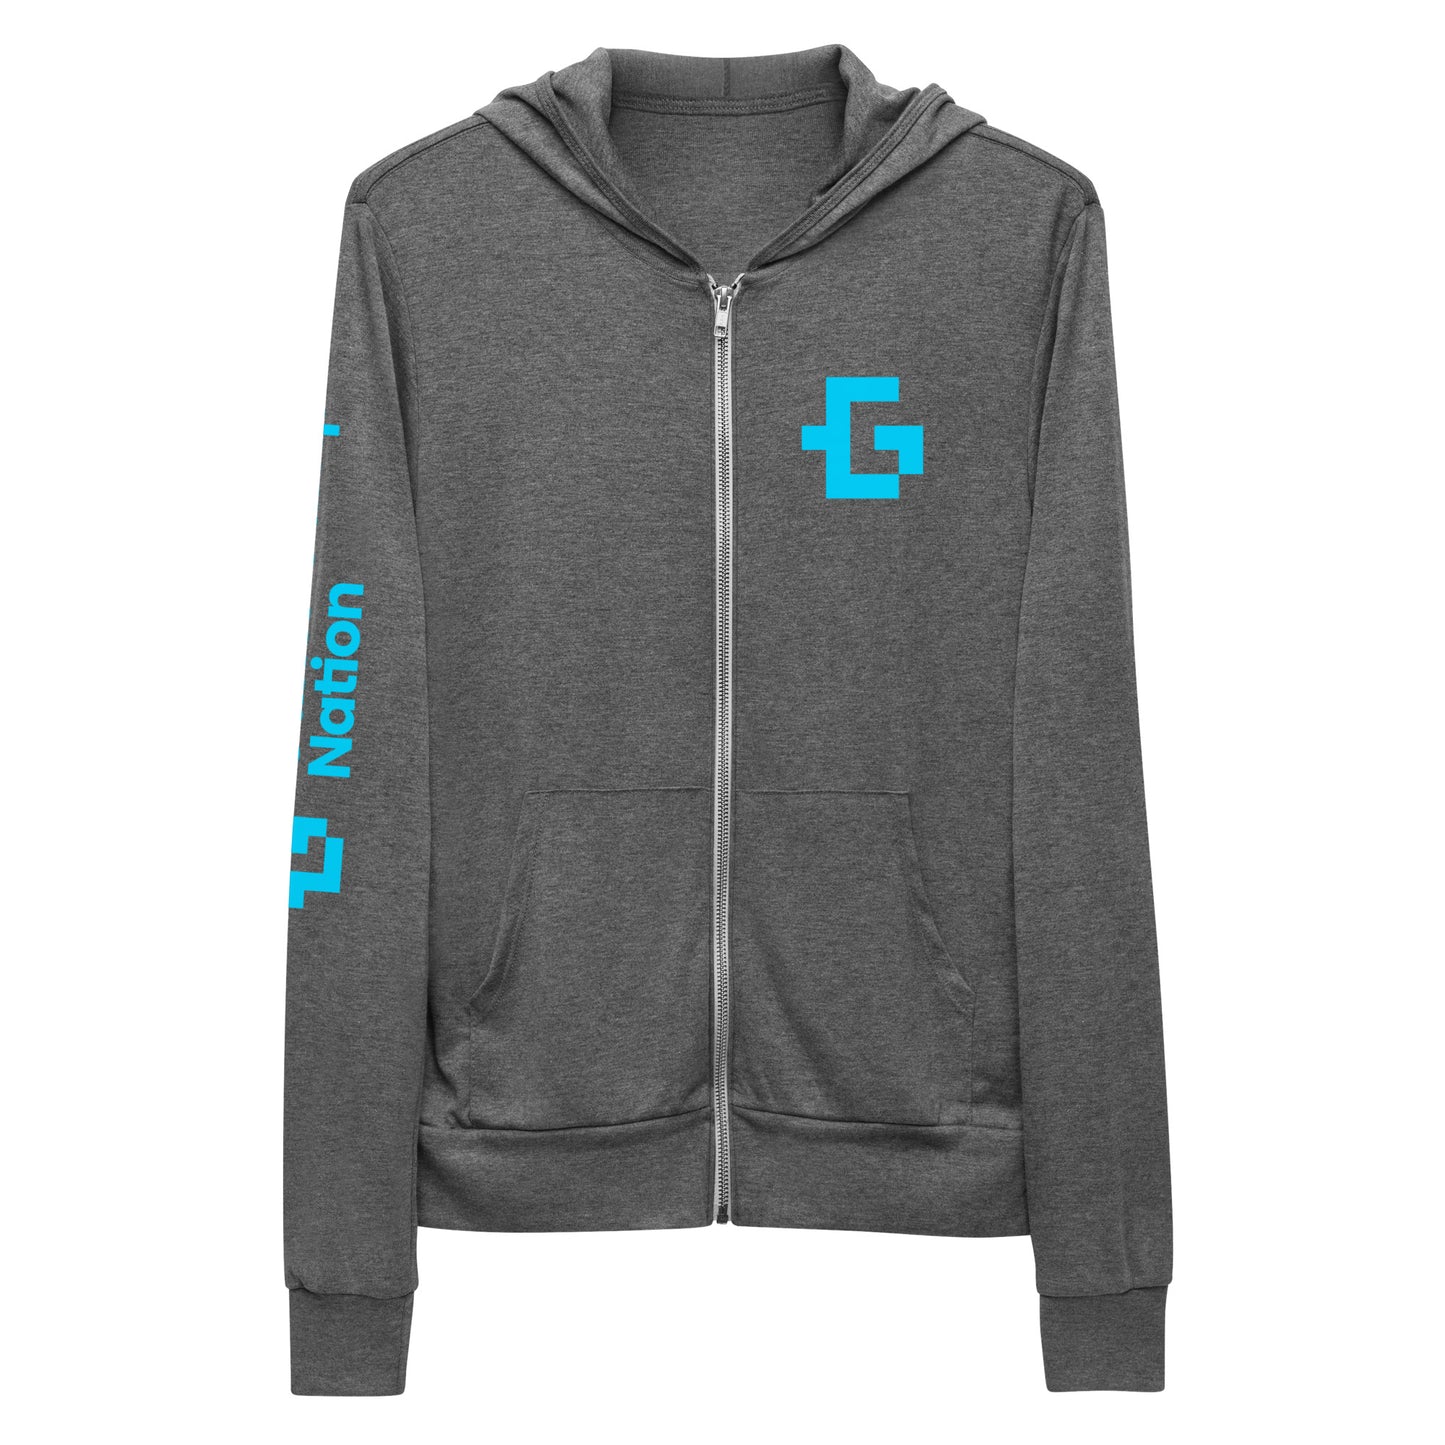 Blue logo unisex zip hoodie